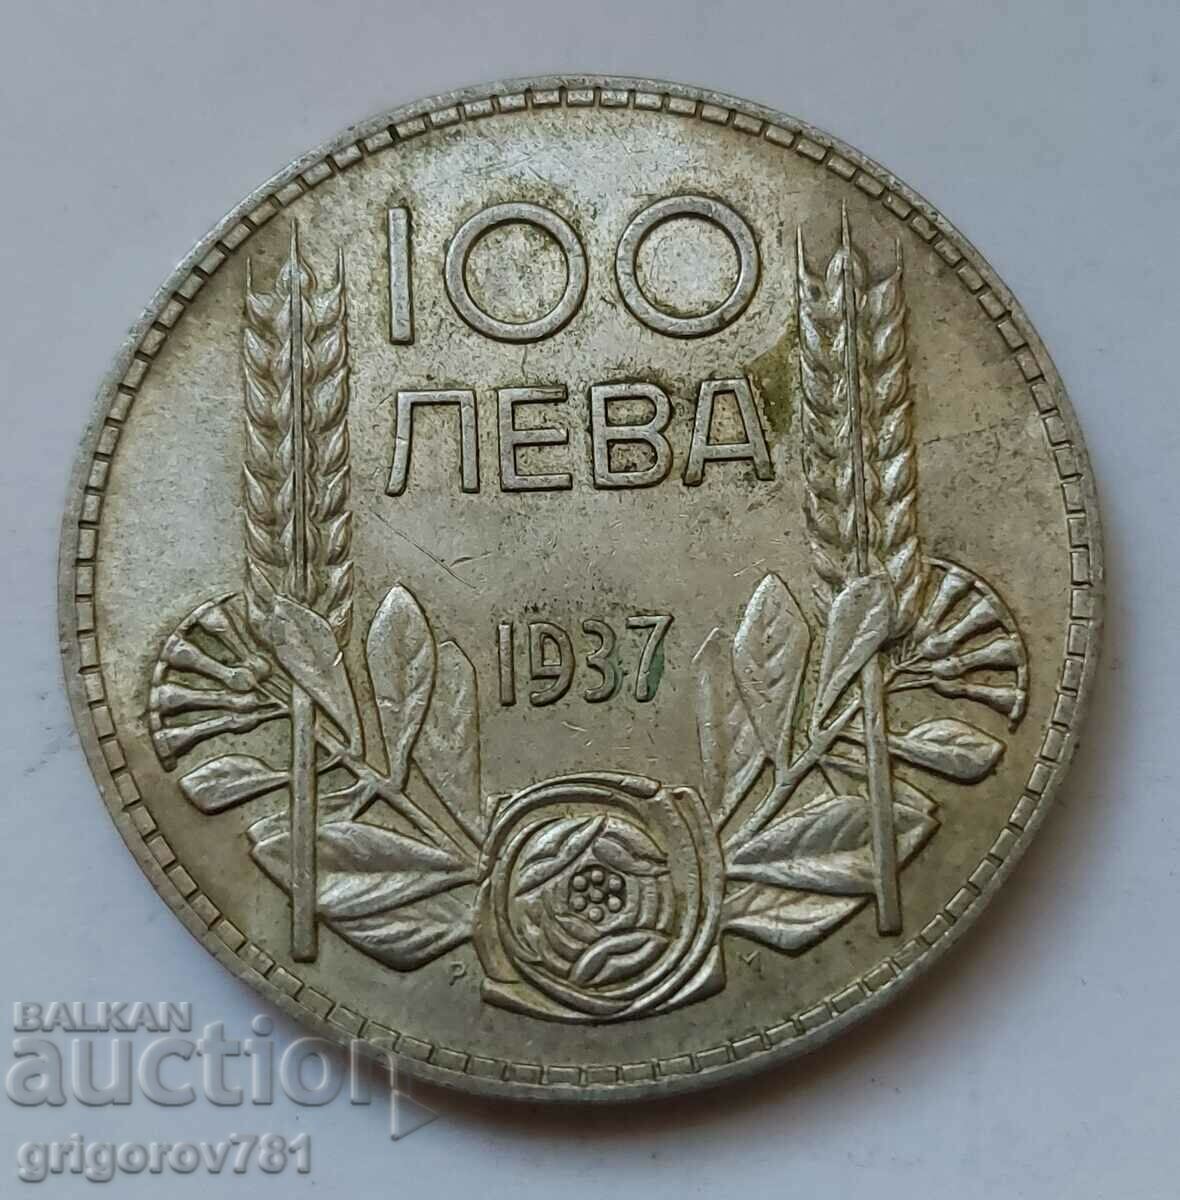 Ασήμι 100 λέβα Βουλγαρία 1937 - ασημένιο νόμισμα #96